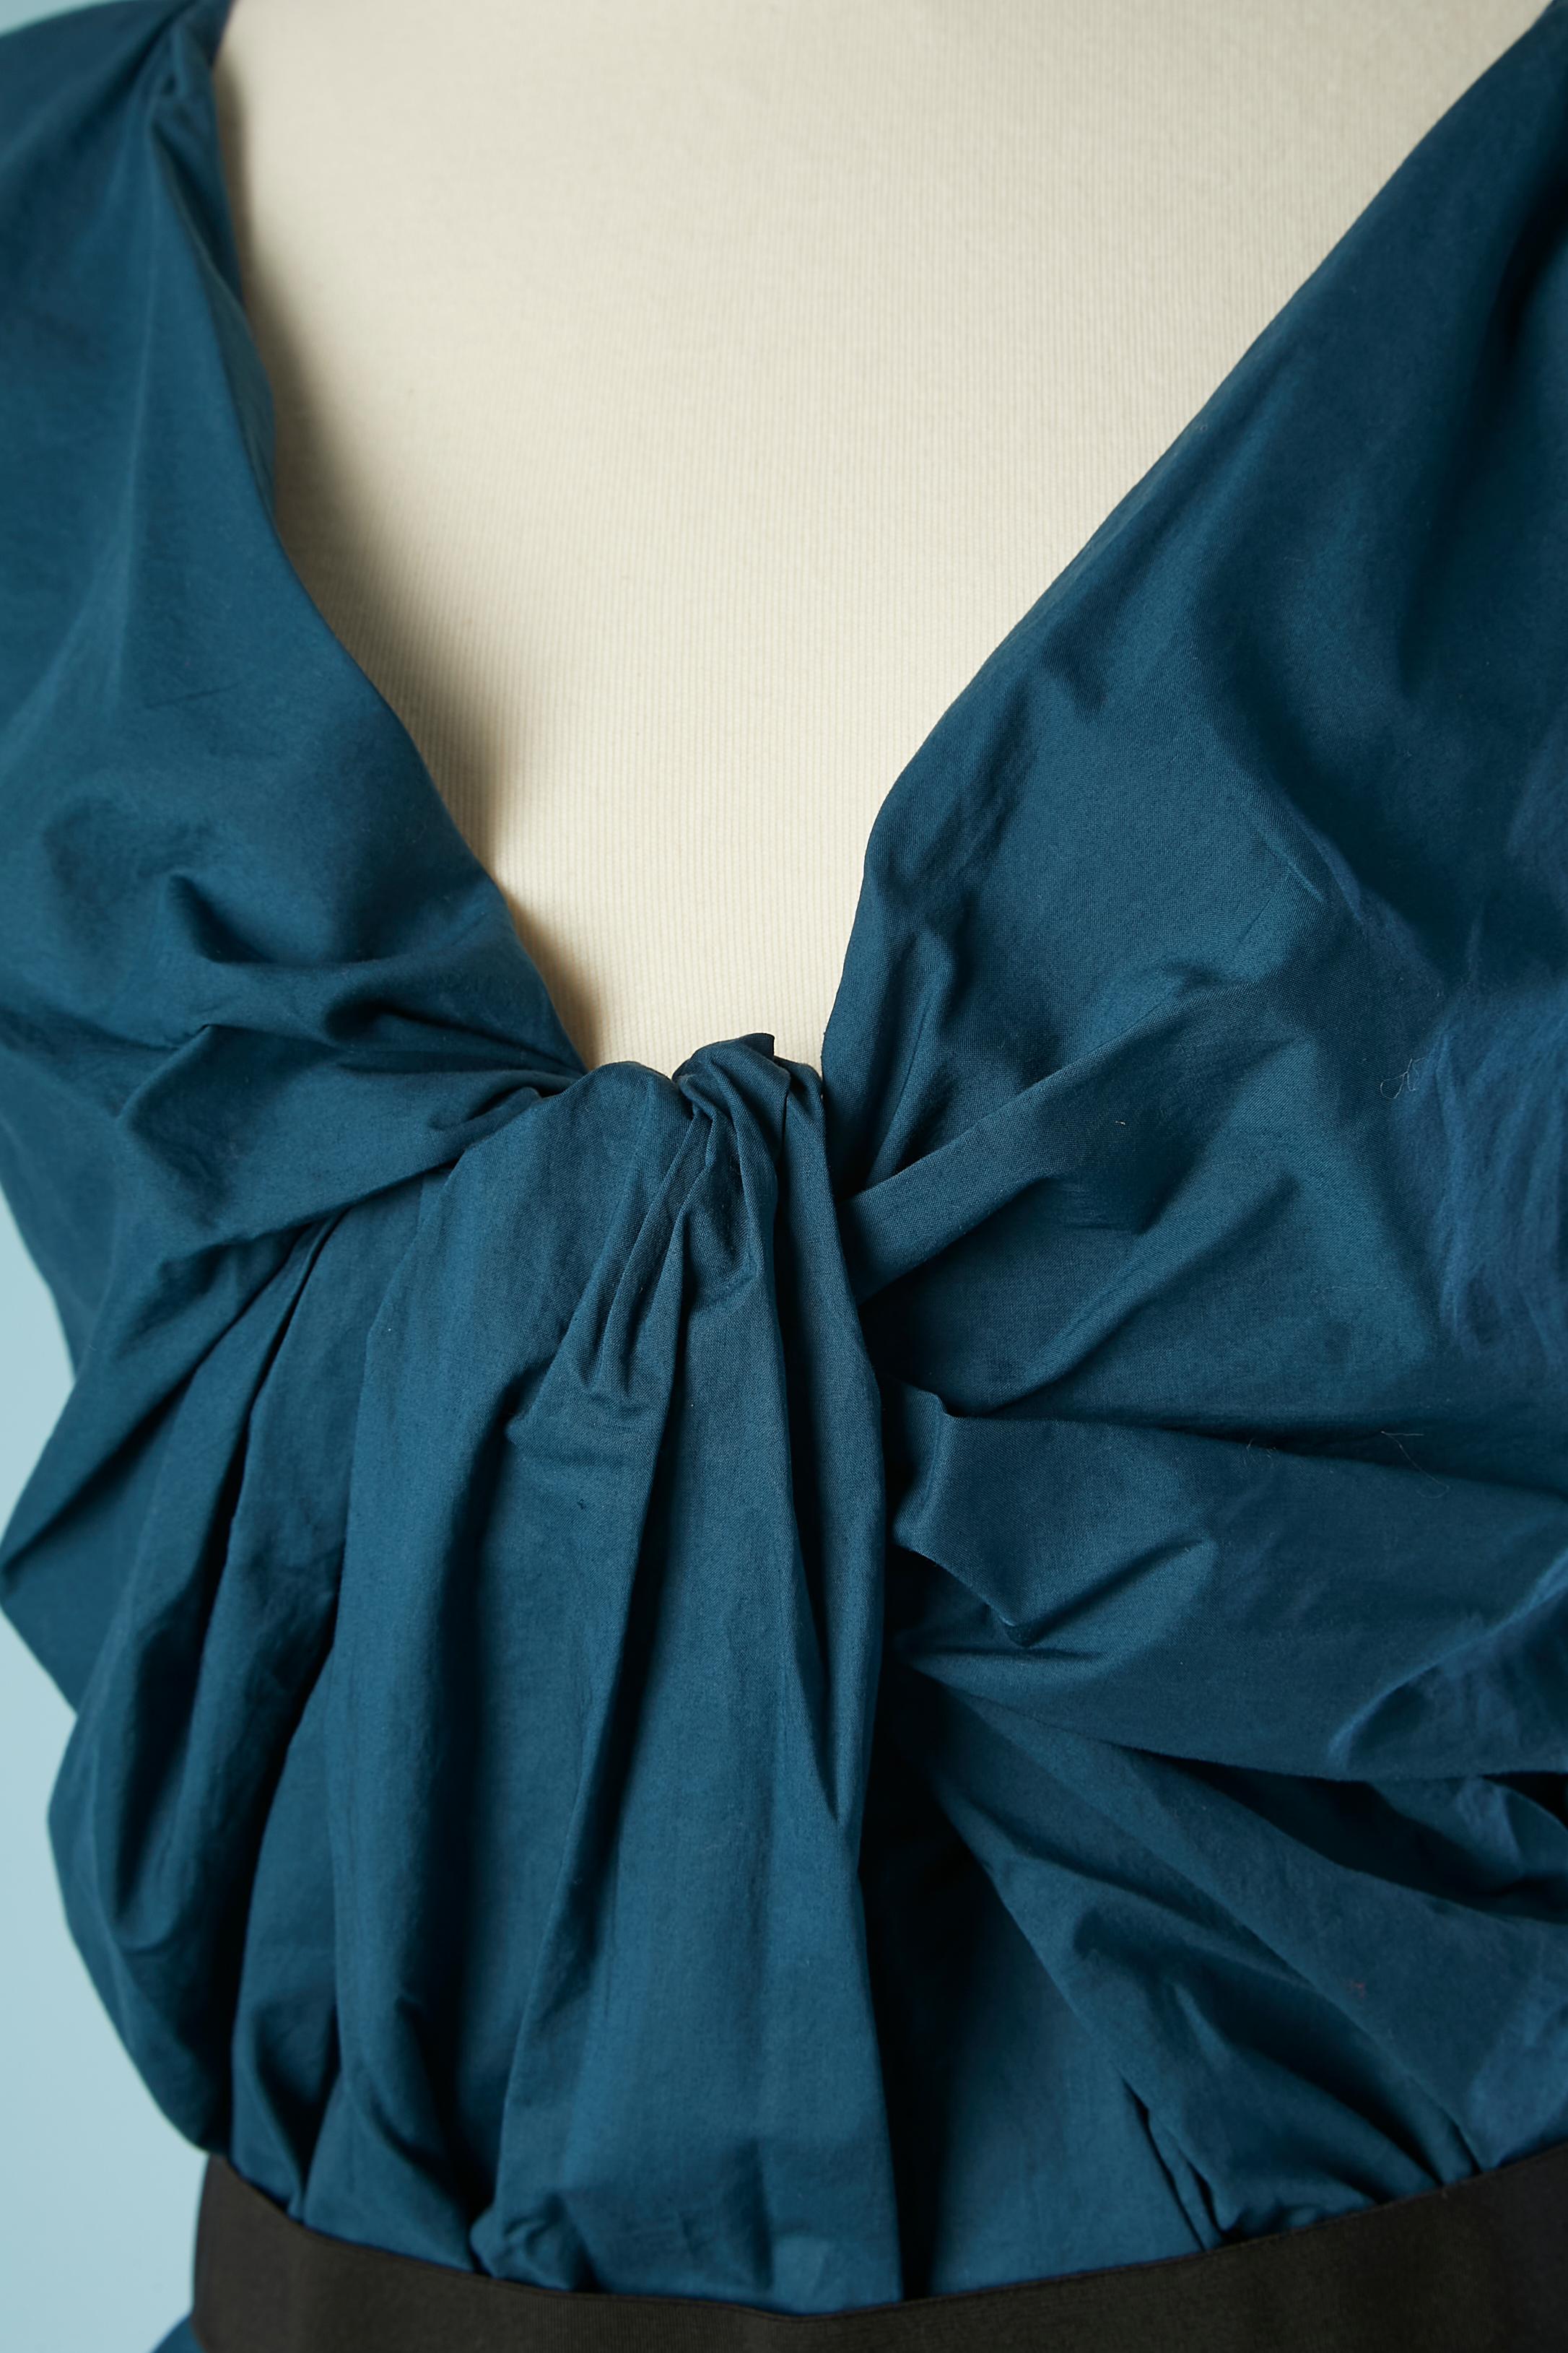 Blaues, ärmelloses Baumwollkleid mit gedrehter Drapierung im Vorderteil. Reißverschluss in der hinteren Mitte. Elastischer Gürtel in der Taille. Abgenähte Kante (Armausschnitt und Boden) Tasche auf beiden Seiten.
SIZE 38 (Fr) M 